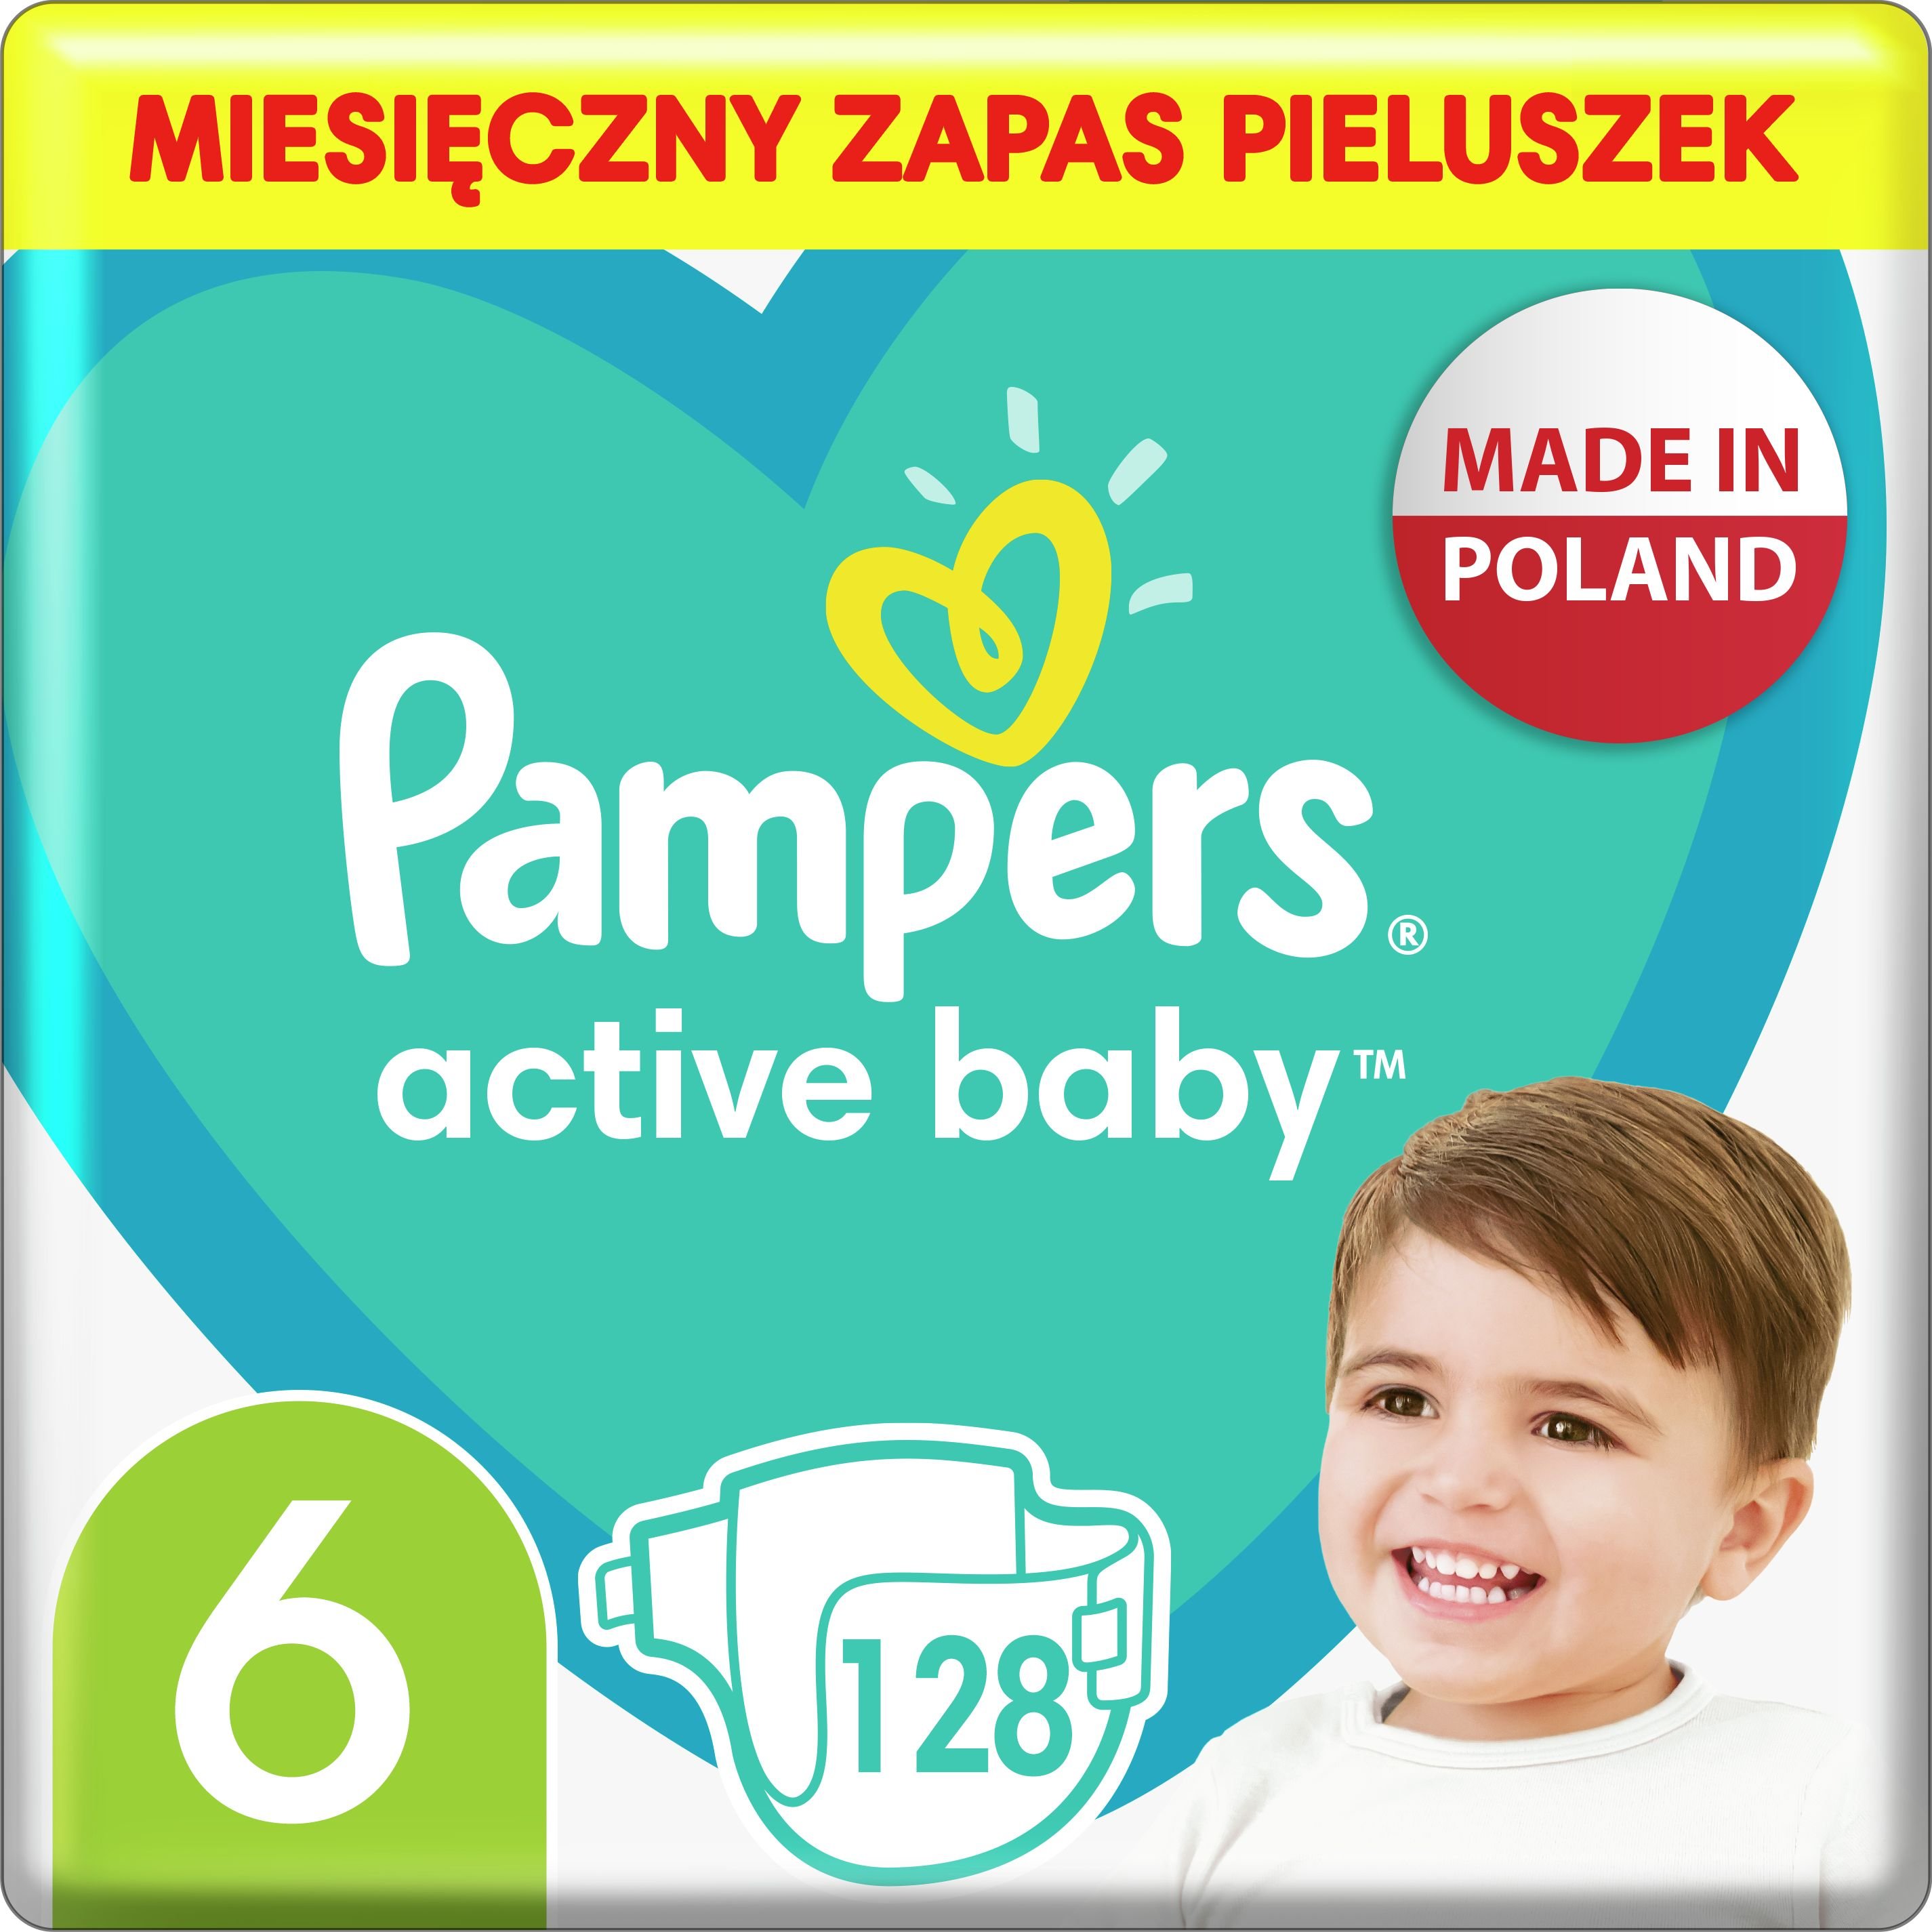 Pampers Pieluszki Active Baby 6, 13-18 kg, 128 szt.